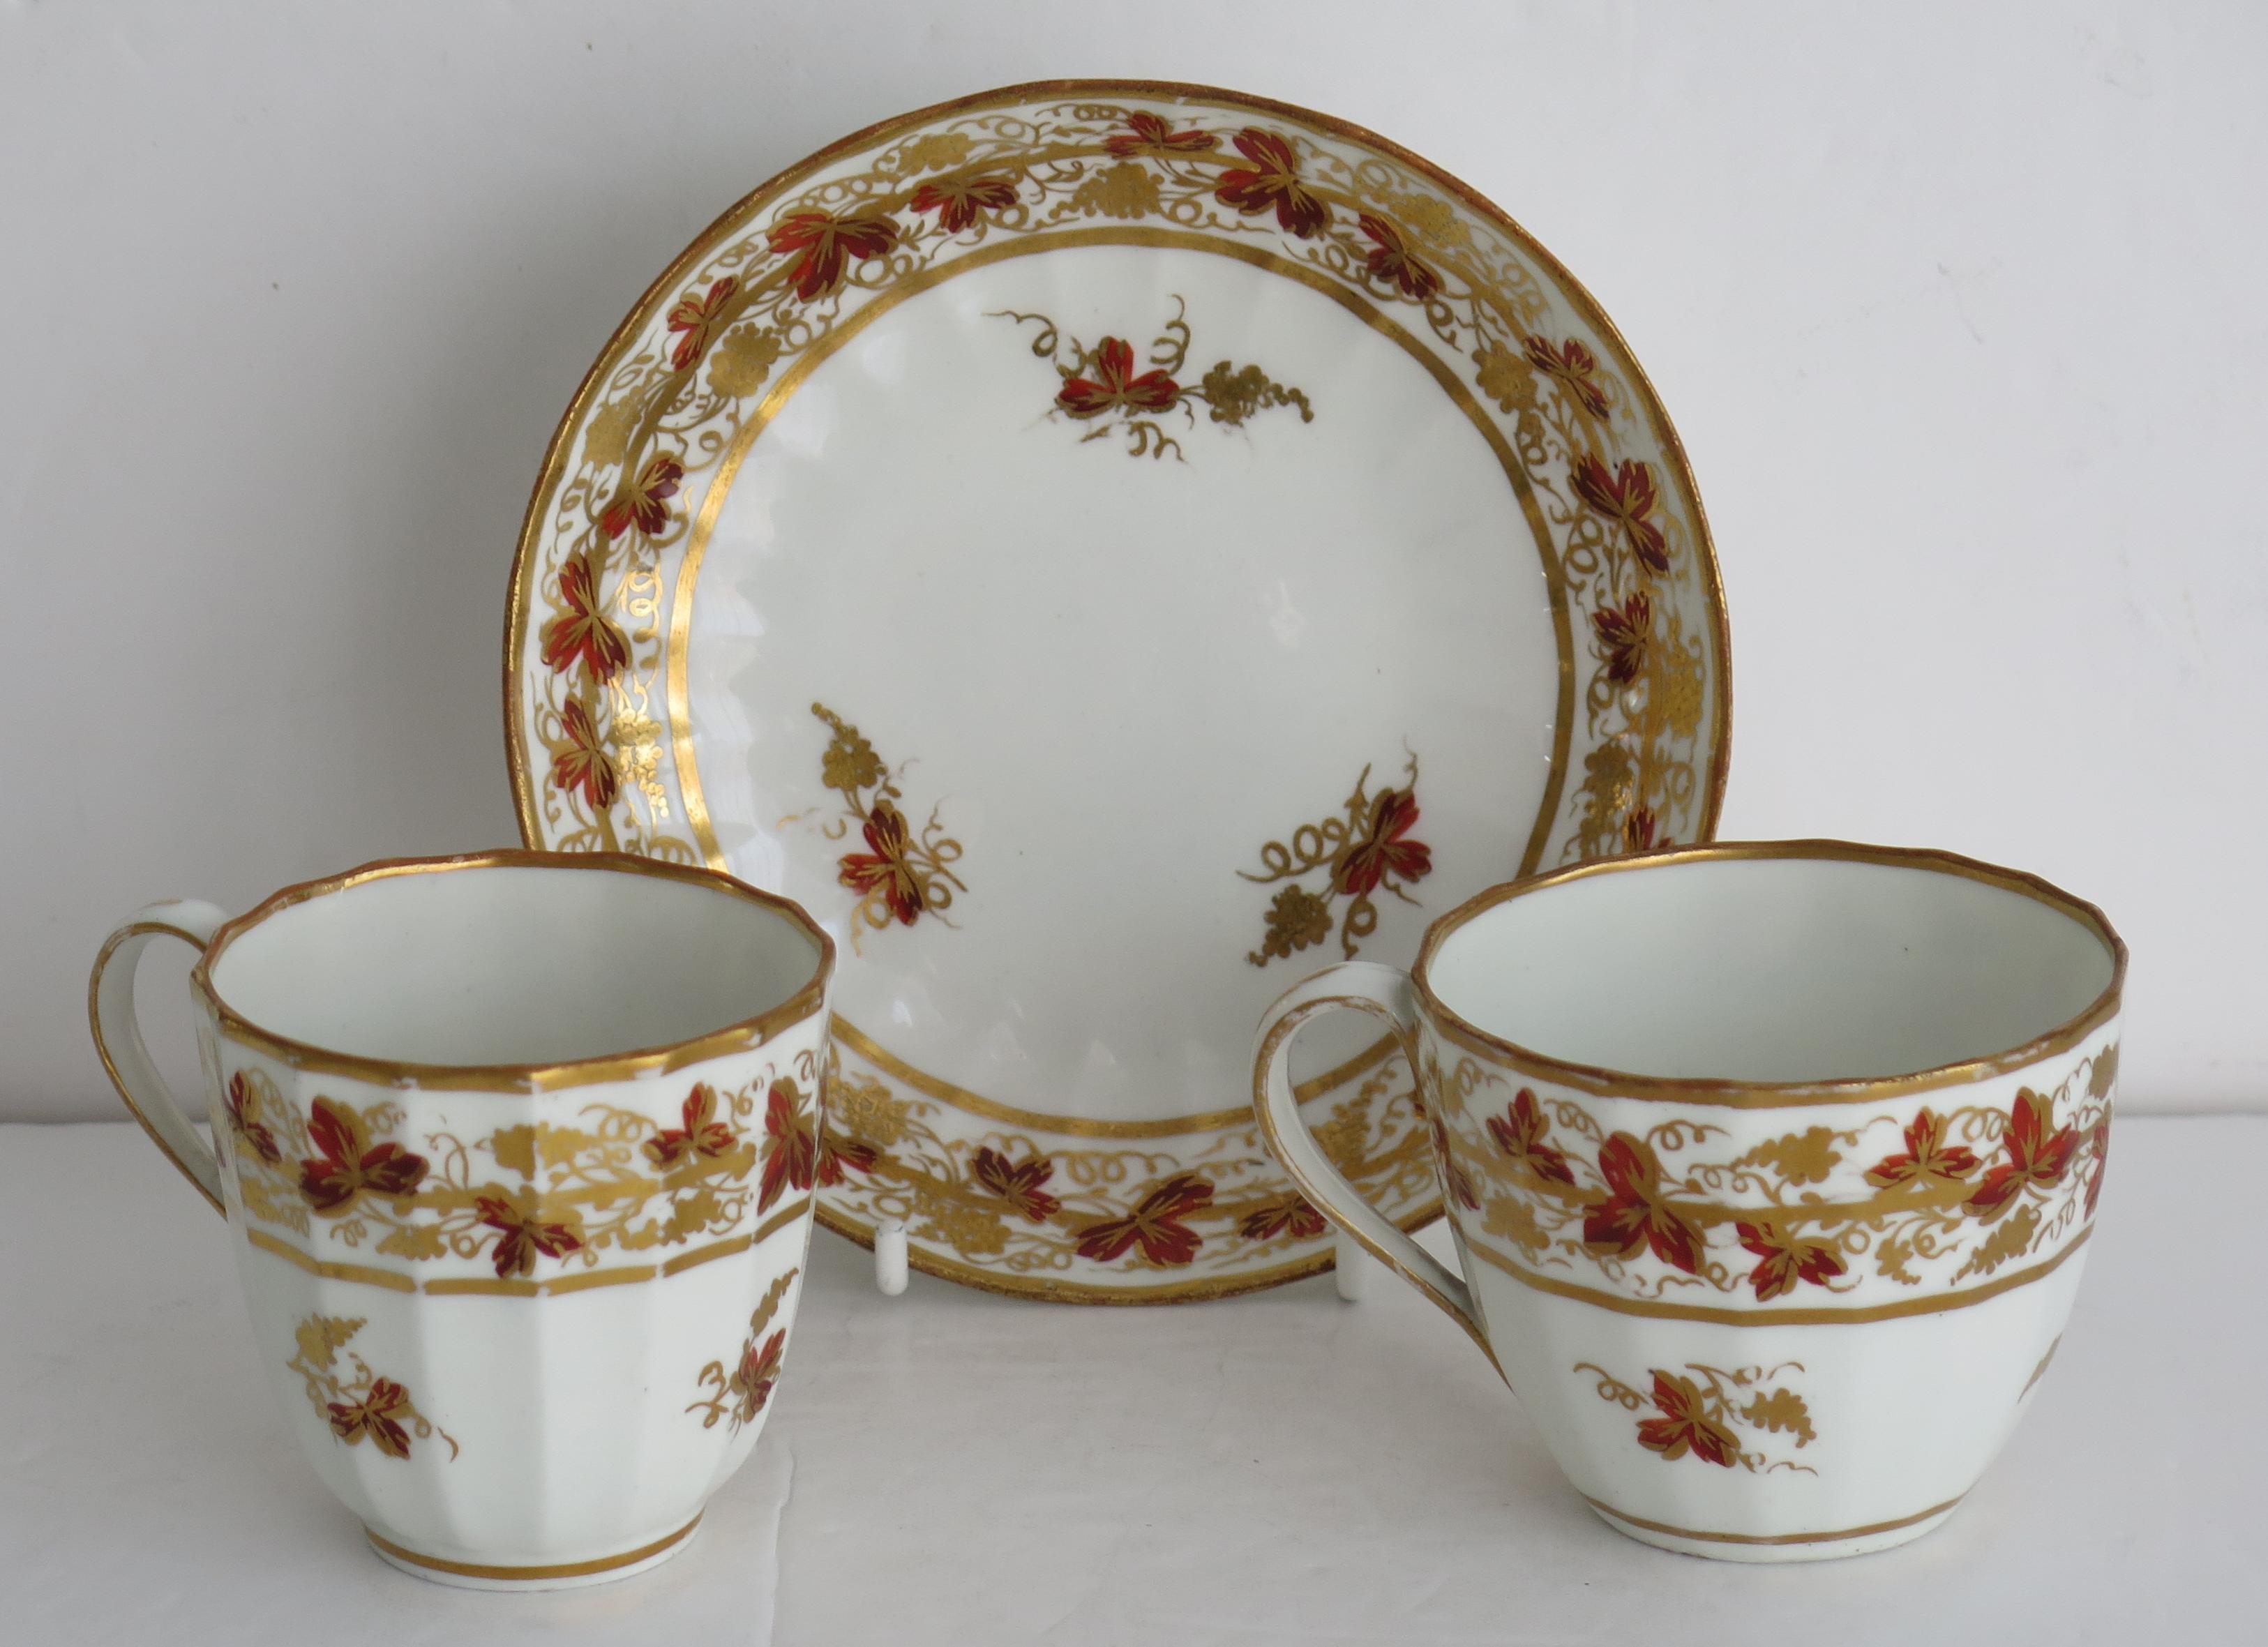 Dies ist ein gutes Porzellan TRIO einer Teetasse, Kaffeetasse und Untertasse von der Fabrik Derby, während der George 111. Periode, ca. 1795 gemacht.

Die Stücke sind gut getöpfert in der Hamilton-Flötenform mit 16 vertikalen Facetten. 

Die